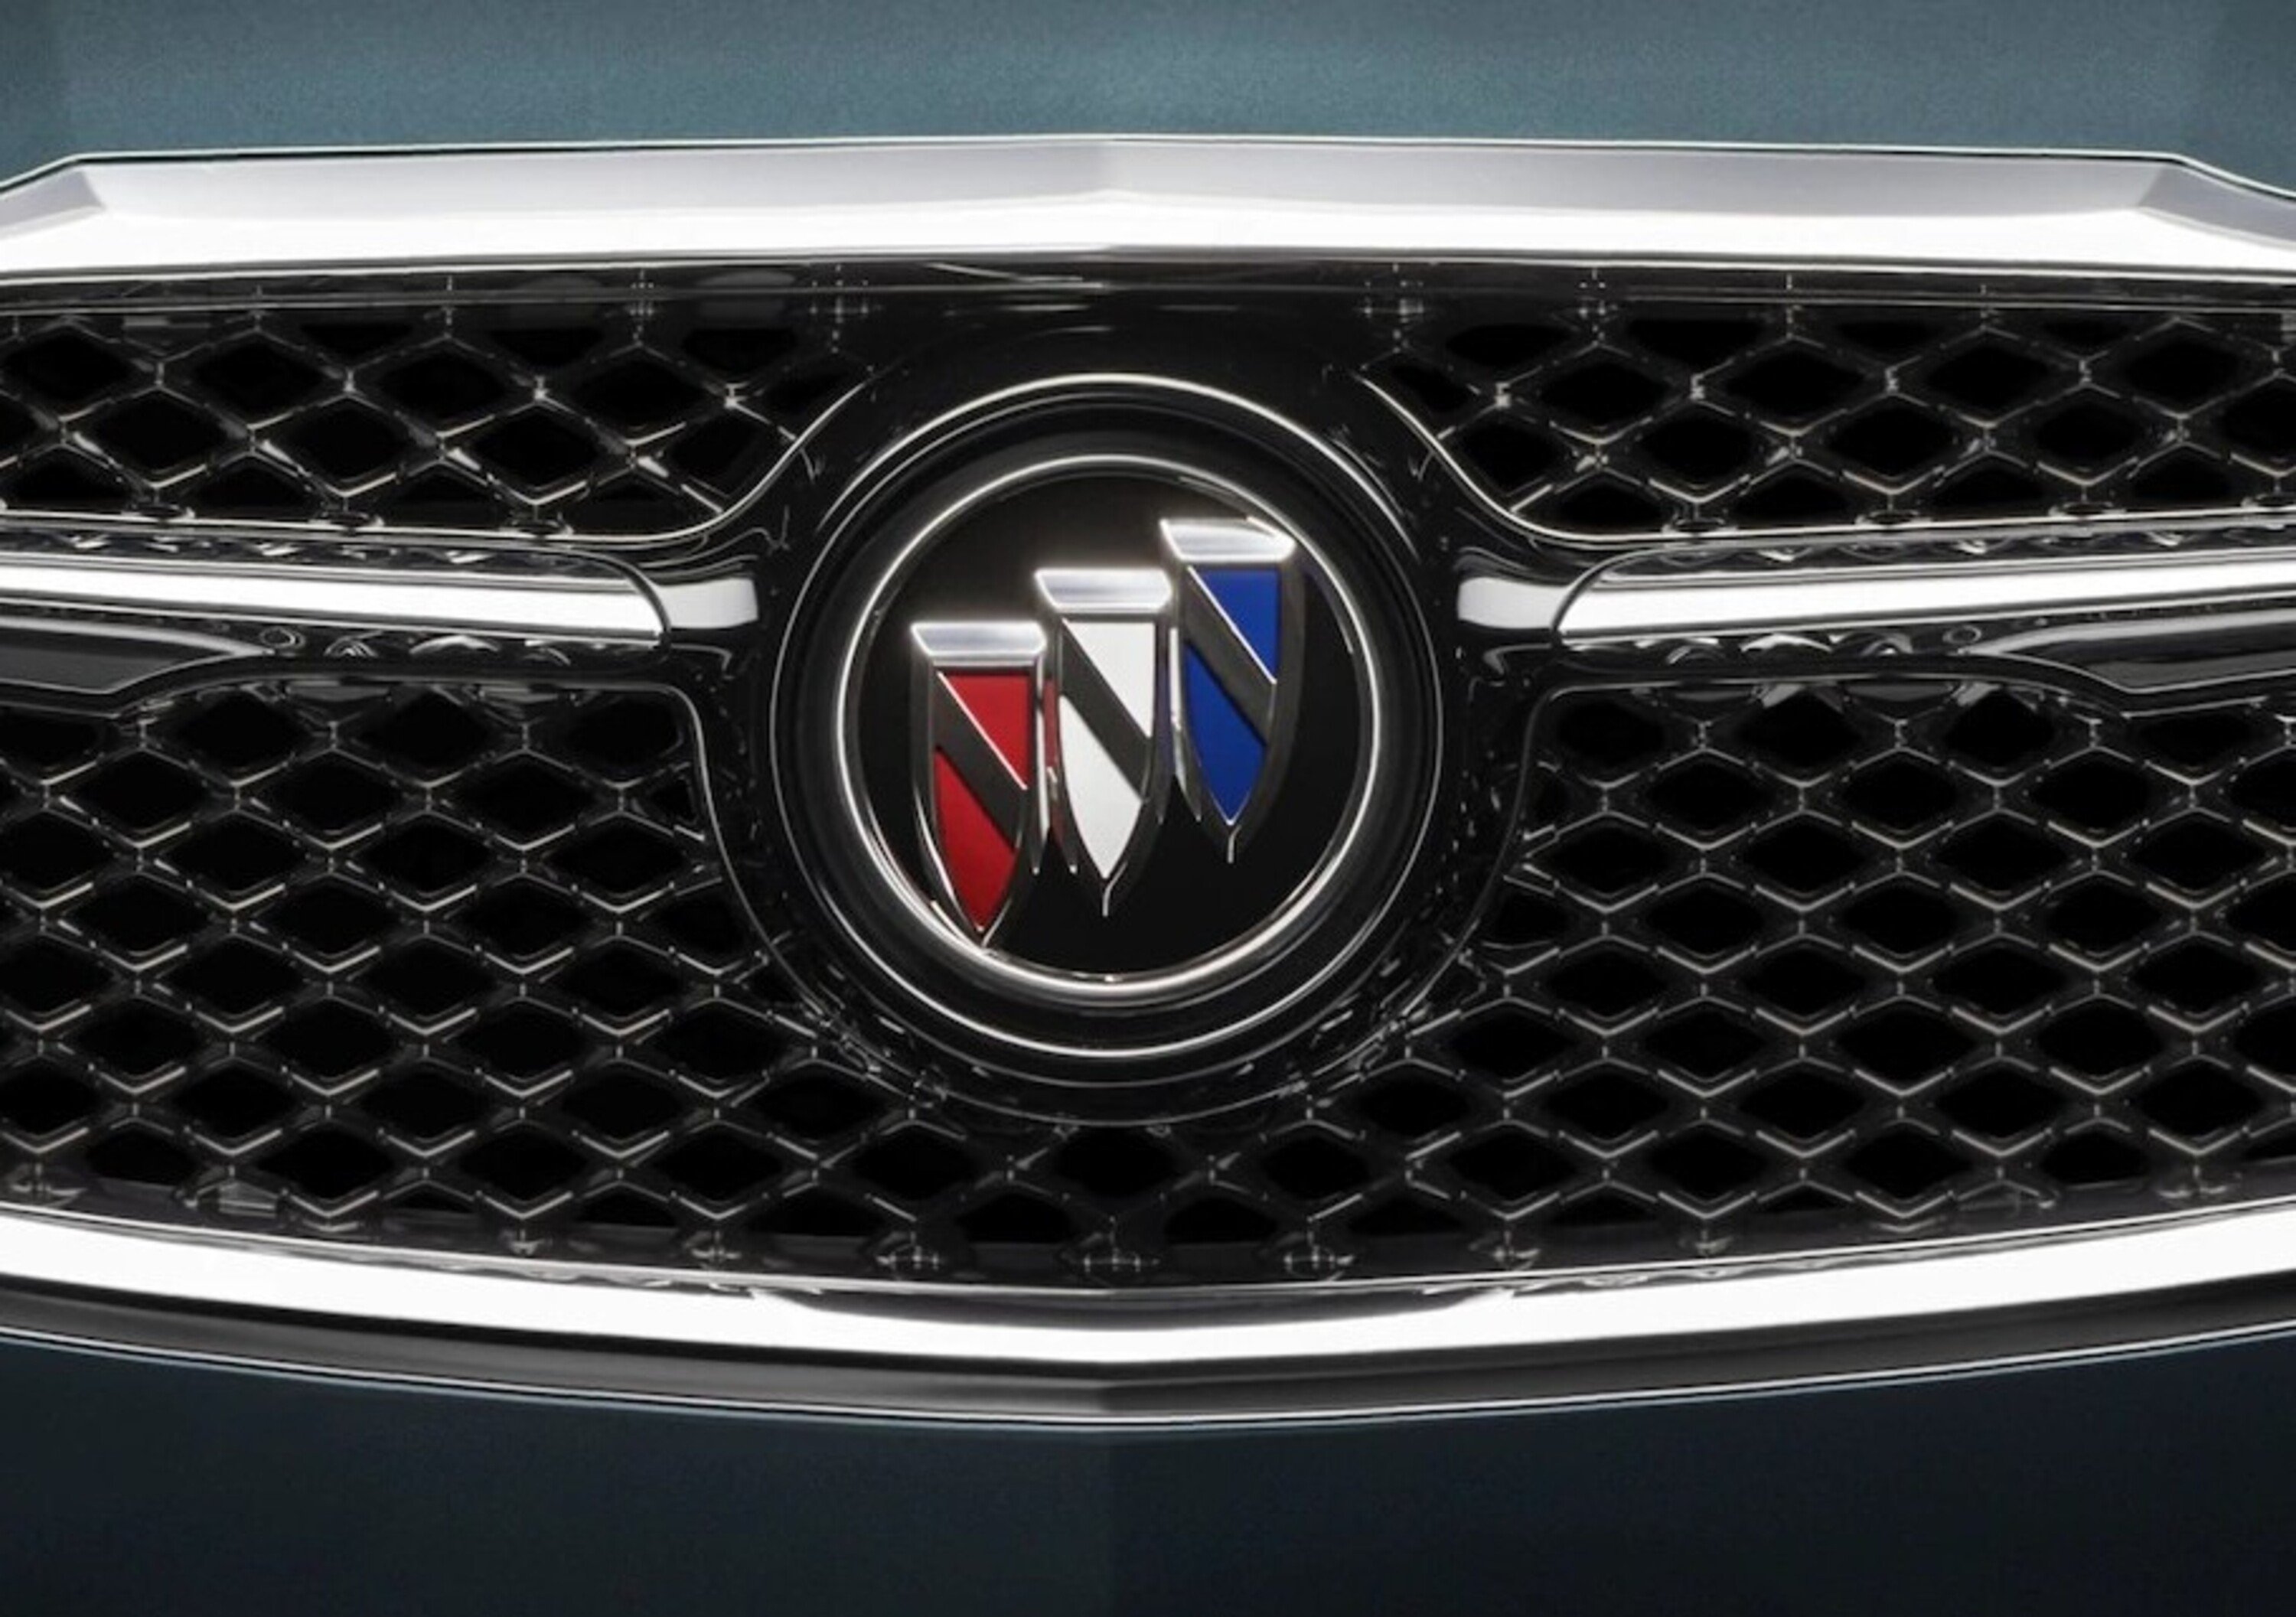 Buick m.y. 2019: via il nome resta il logo